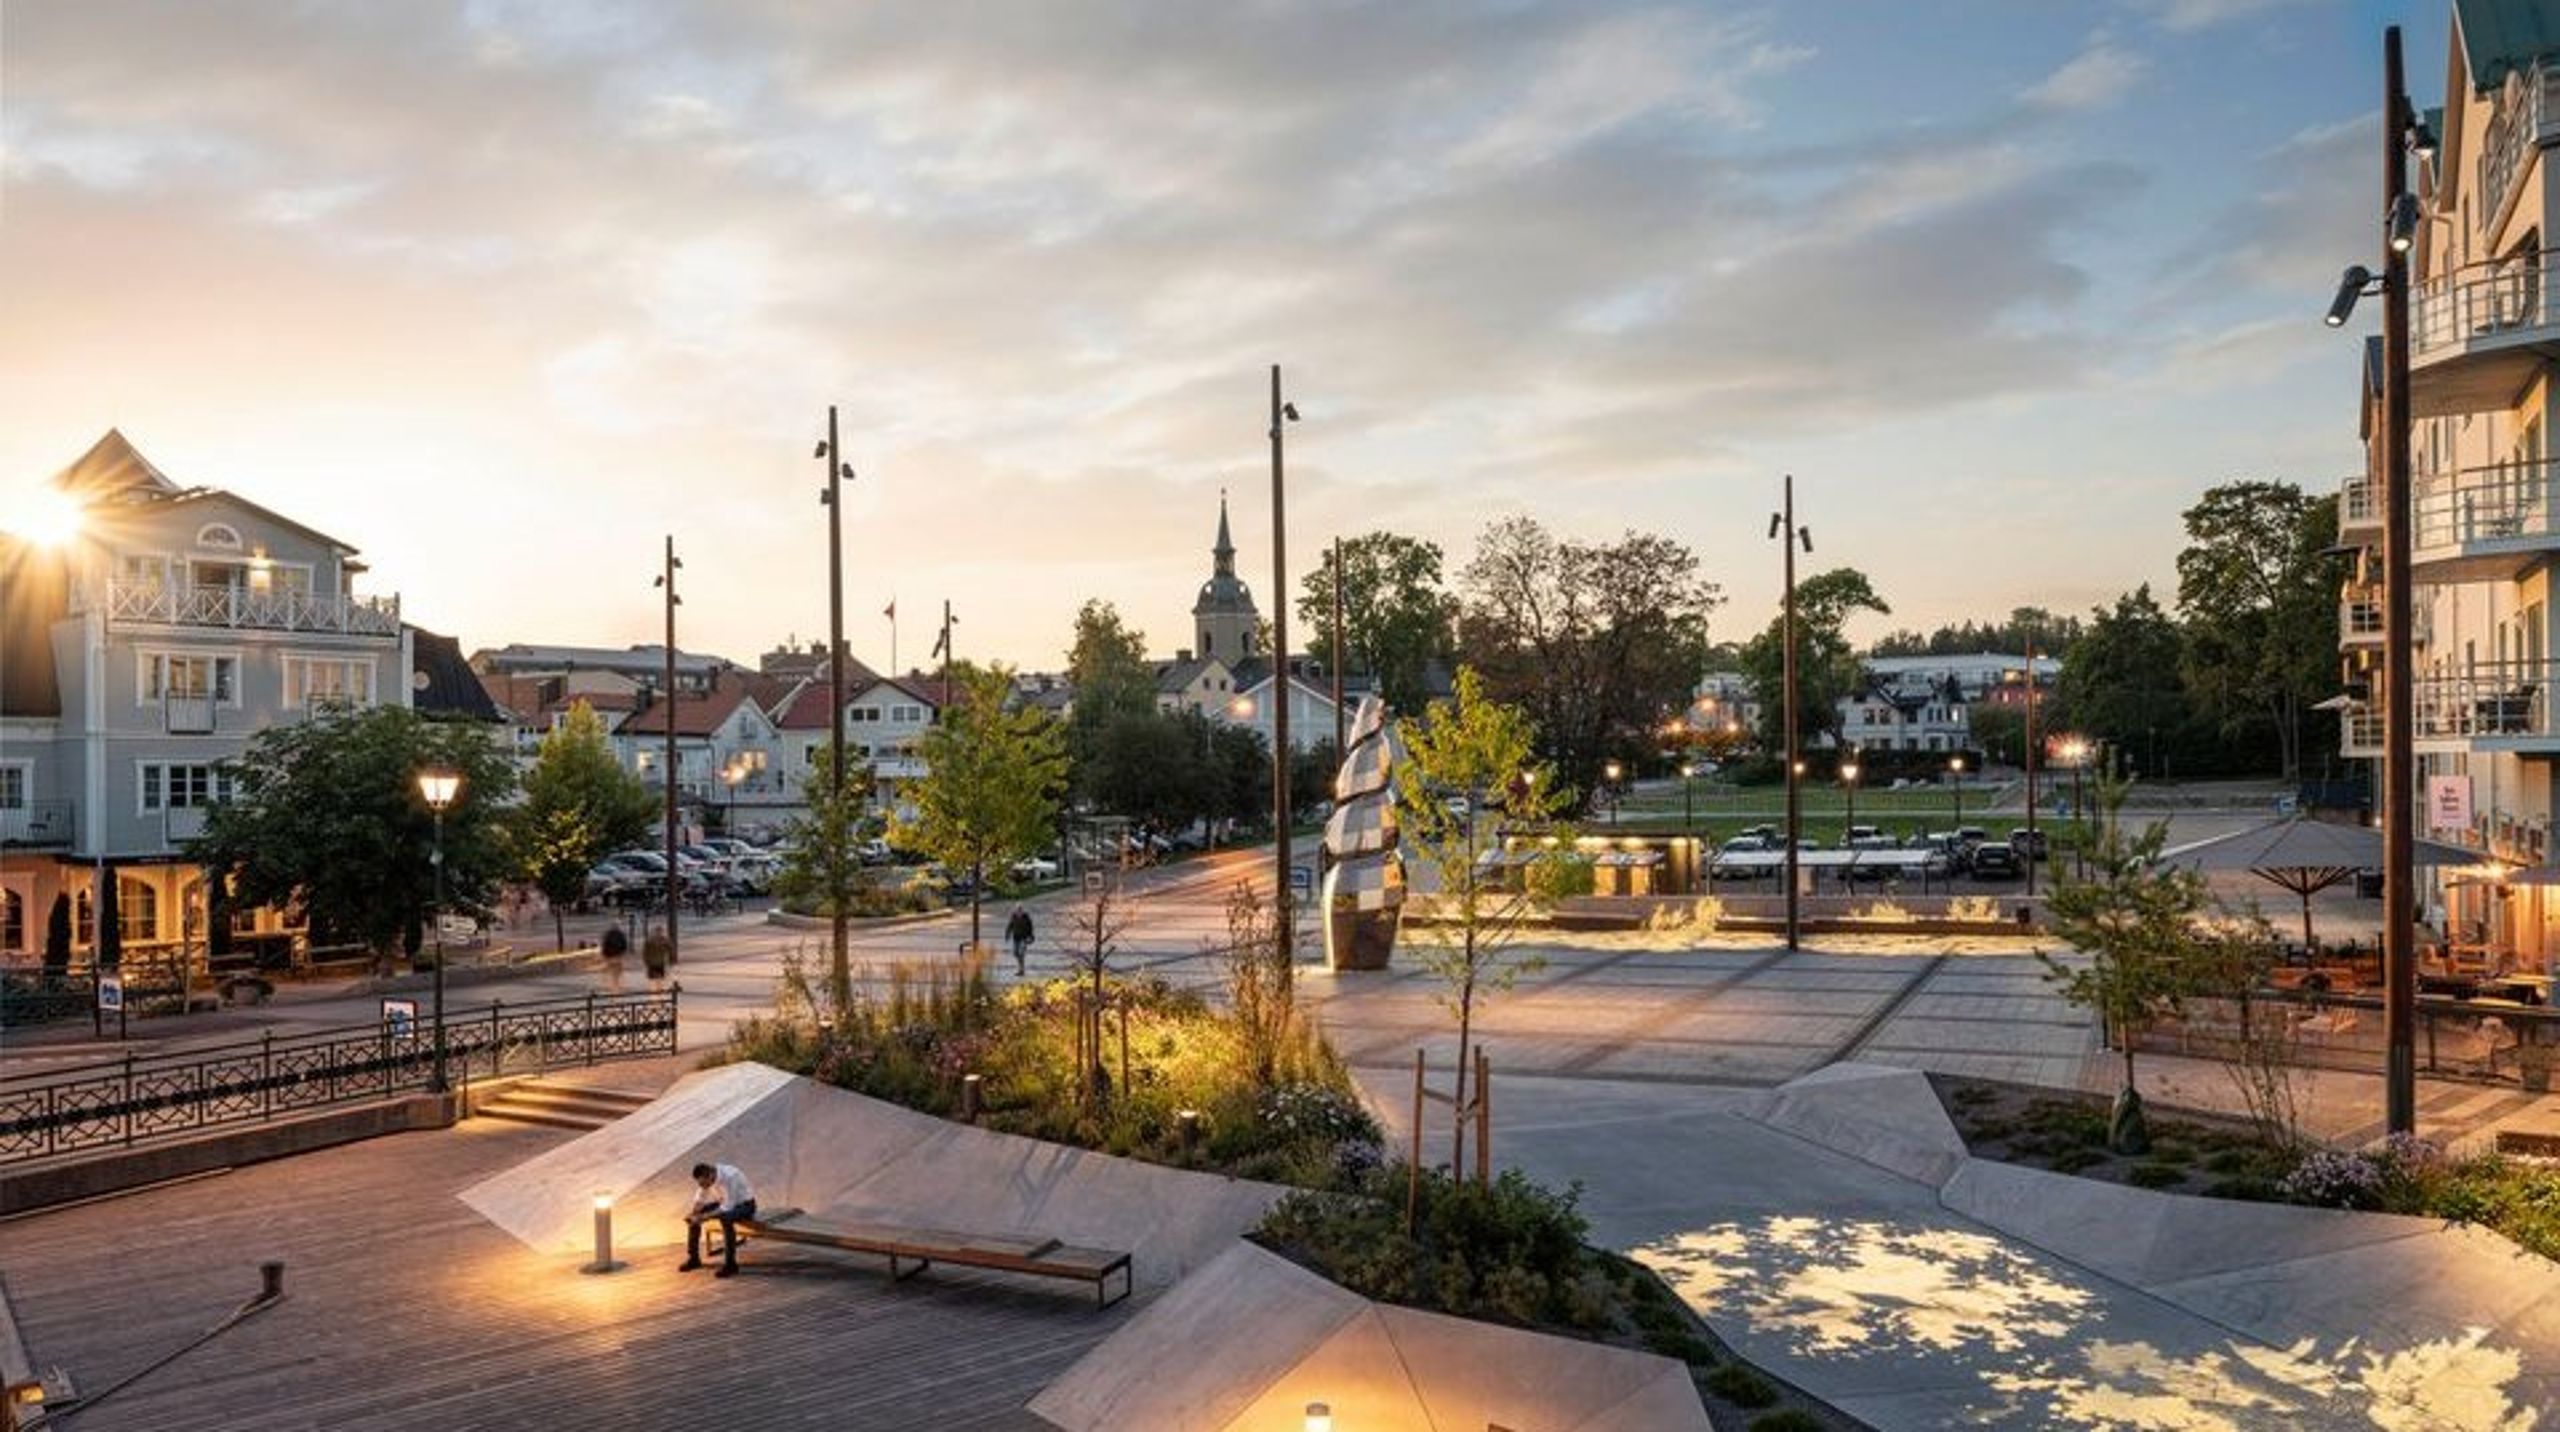 Ansvariga arkitekter för projektet är Lina Dahlström, Per Andersson, Åsa von Malortie och Niklas Bosrup på Sydväst arkitektur och landskap.